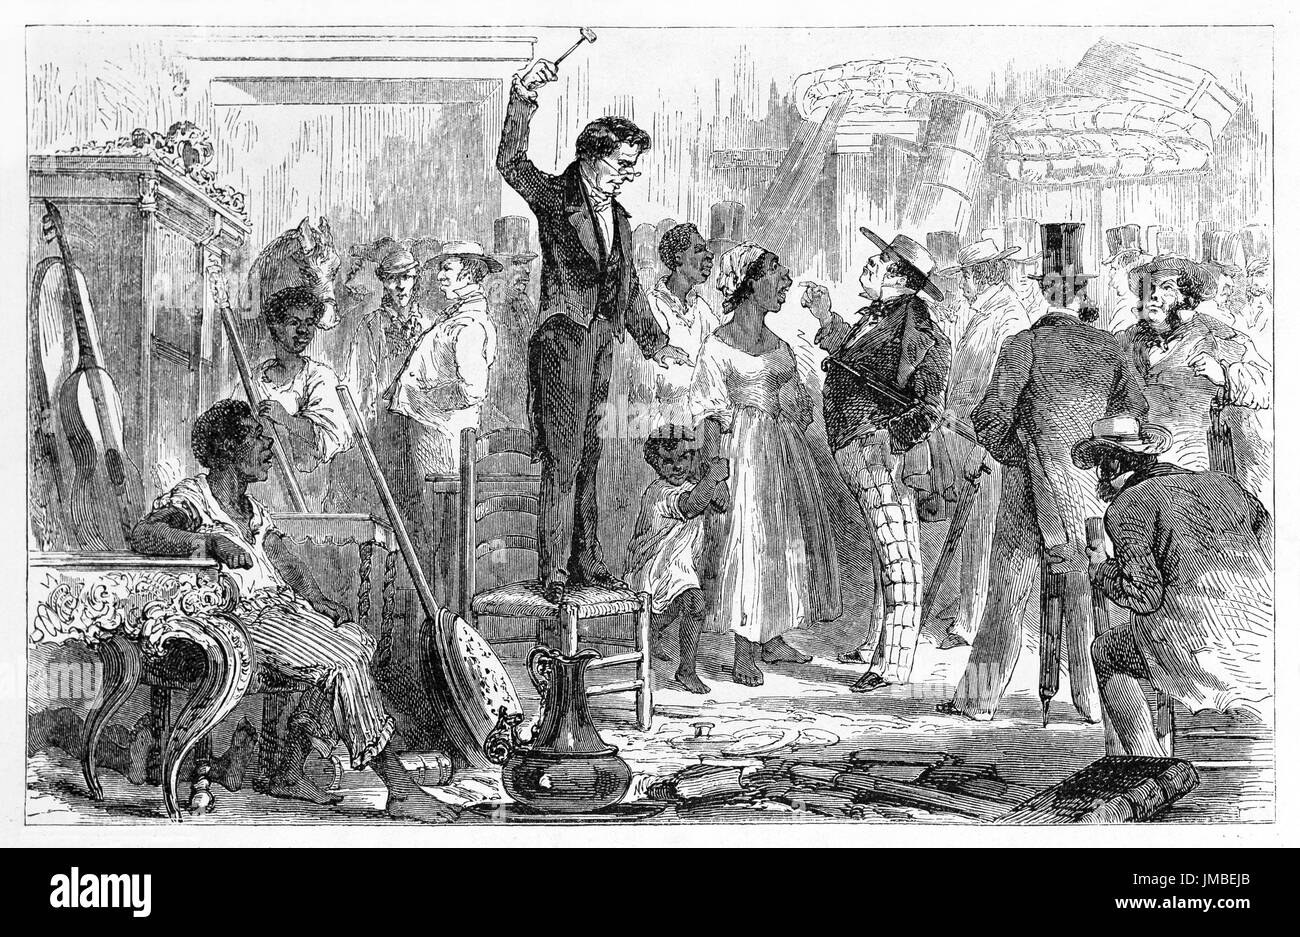 Vente d'esclaves noirs crowdy traités comme des objets lieu à Rio de Janeiro. Art de style gravure de tons gris antique par Riou, le Tour du monde, 1861 Banque D'Images